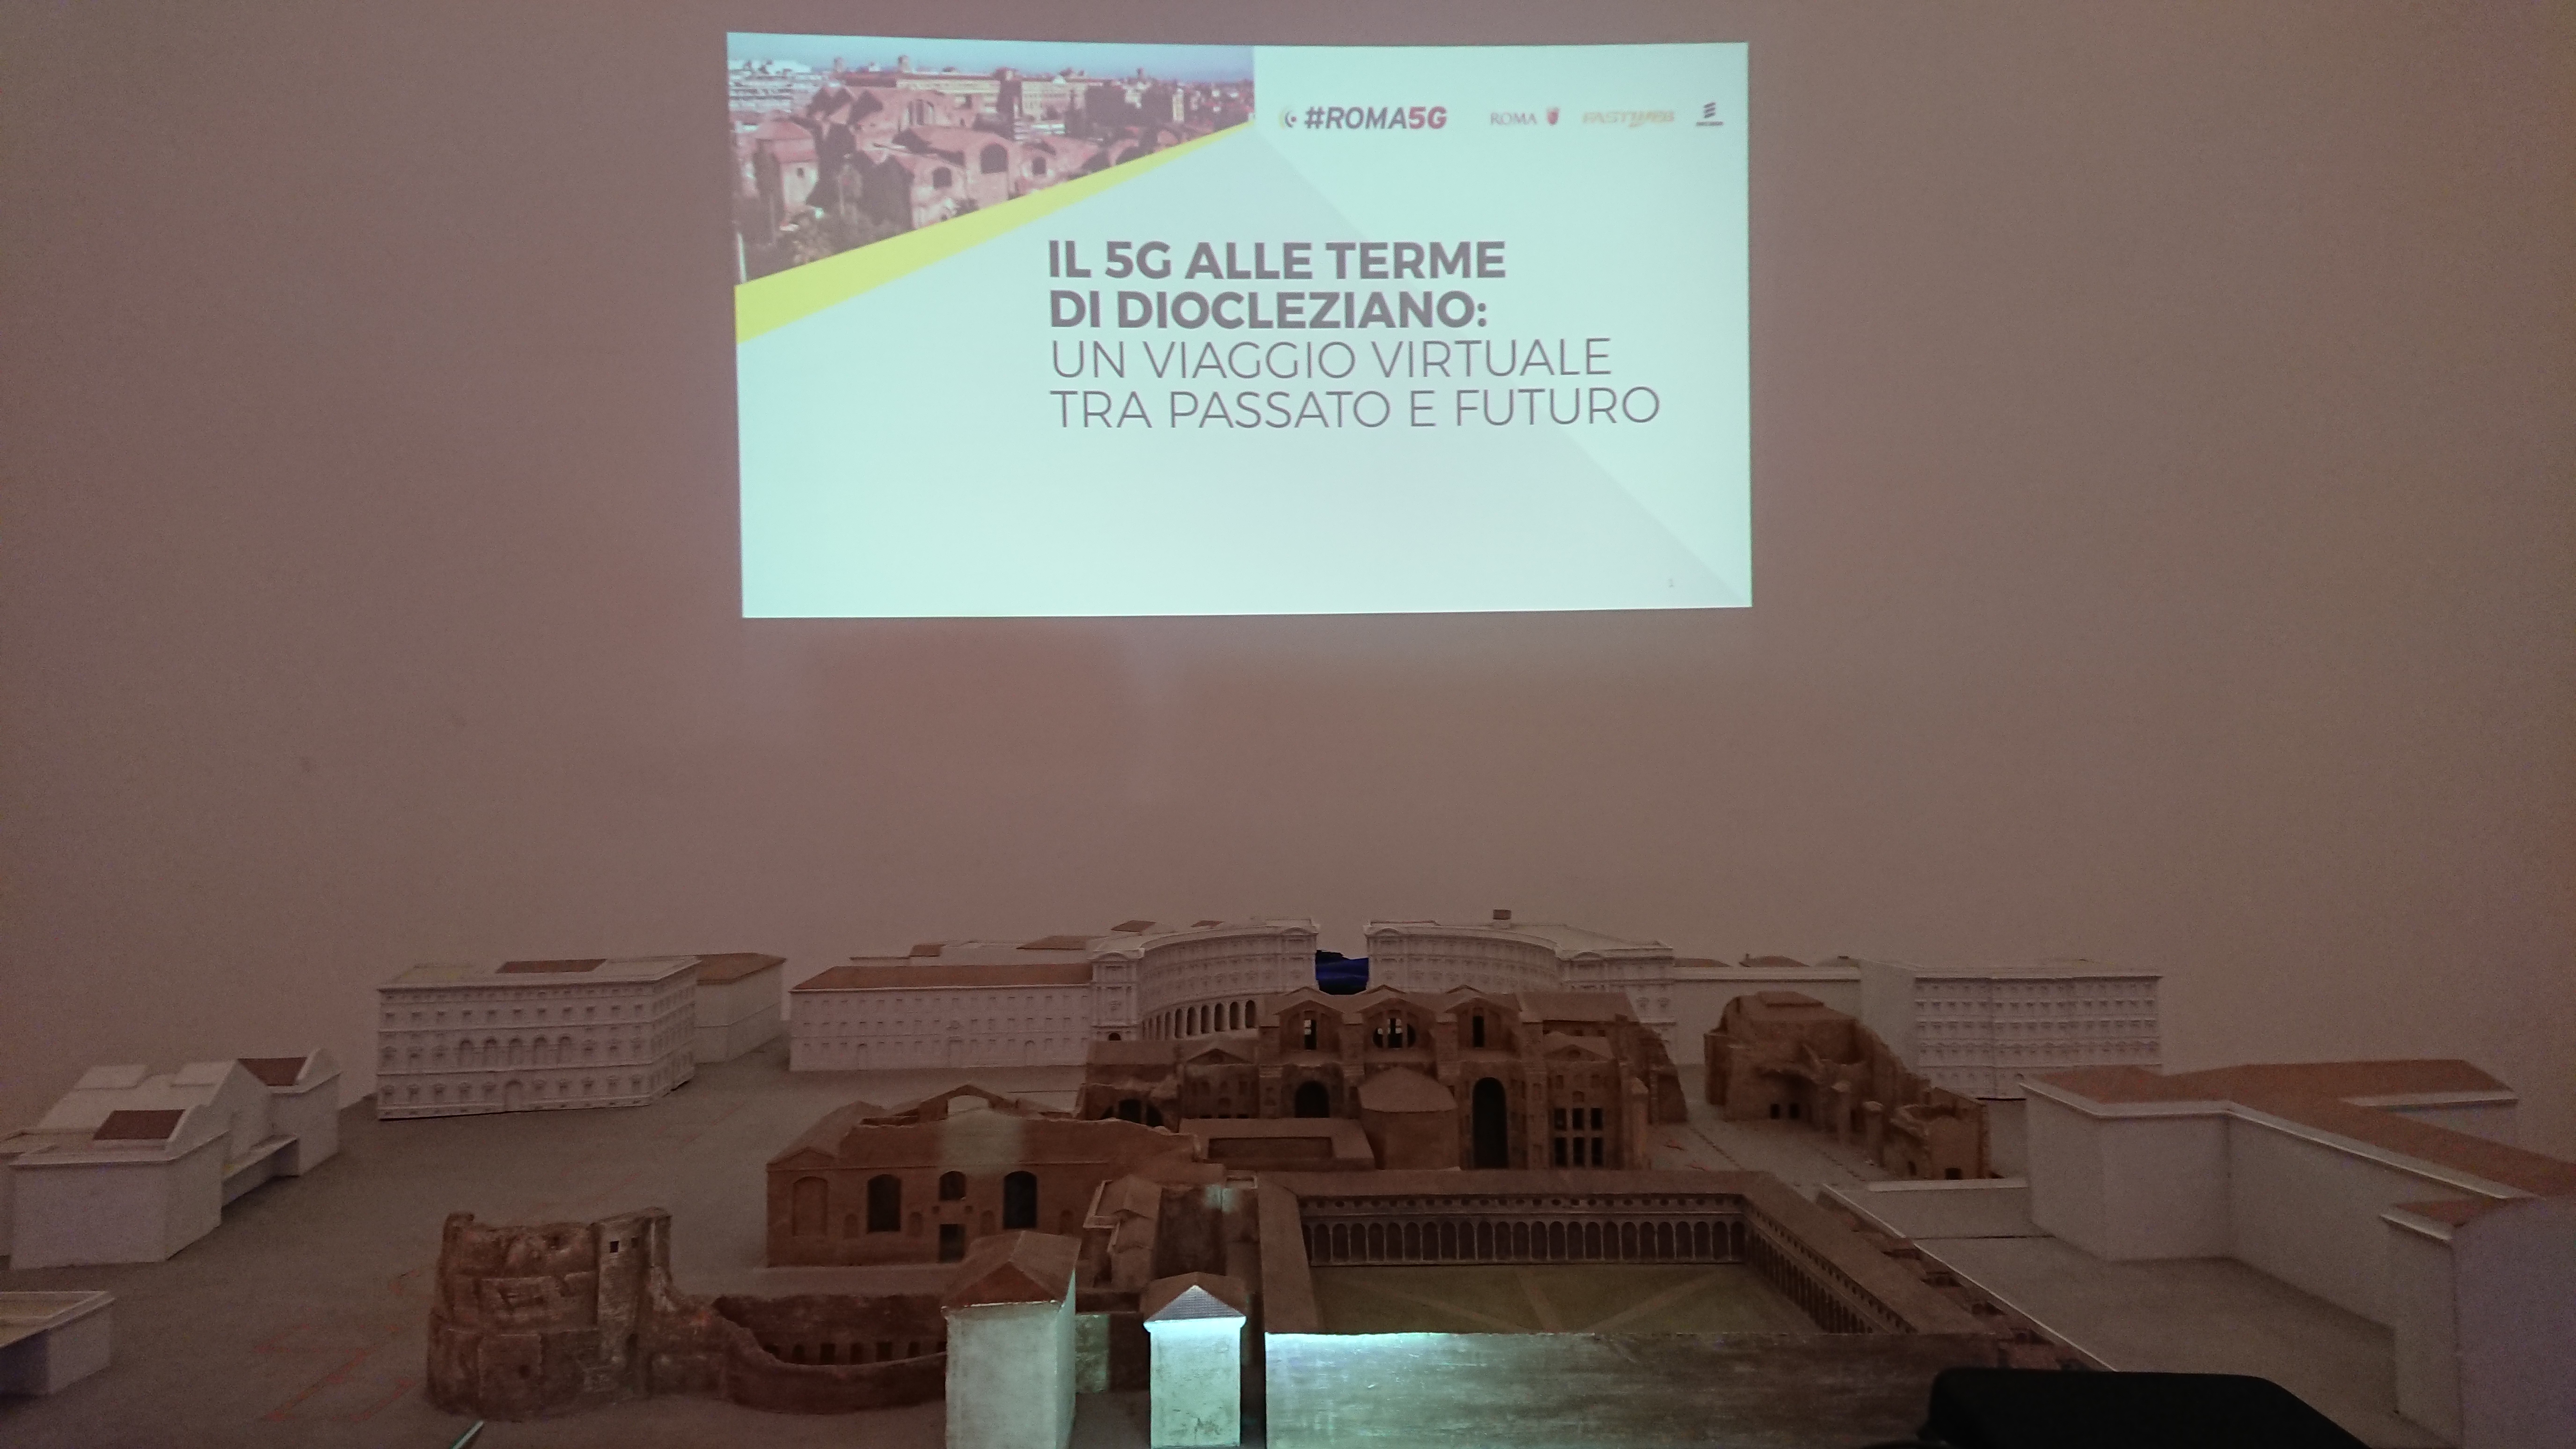 Al momento stai visualizzando Ricostruite attraverso la realtà immersiva le Terme di Diocleziano nel progetto #Roma5G